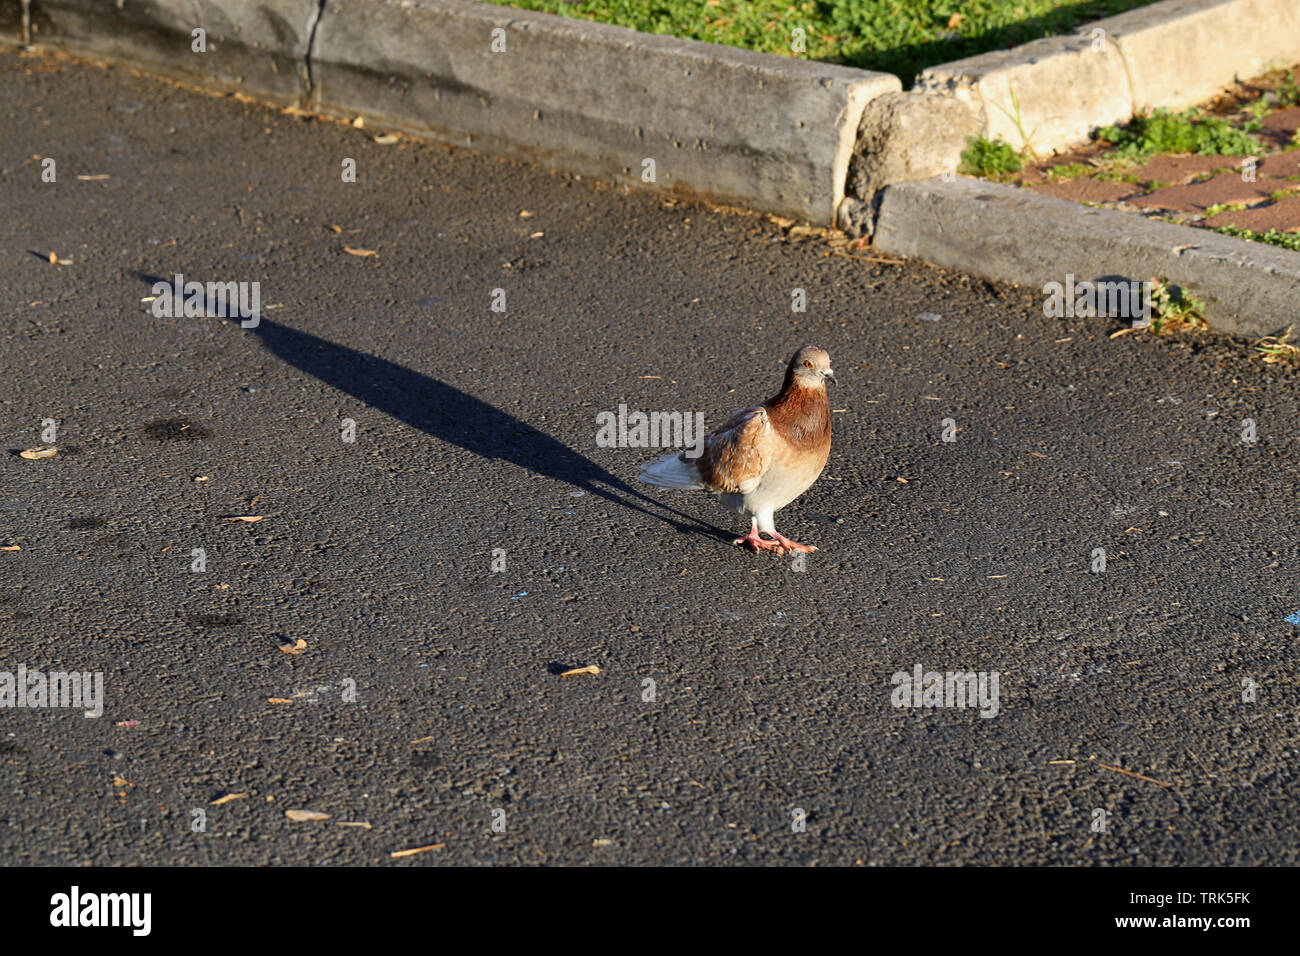 Bianco e Marrone di Pigeon camminando in un parcheggio situato a Funchal, Madeira. La luce del sole crea lunghe e belle ombre. Immagine a colori. Foto Stock